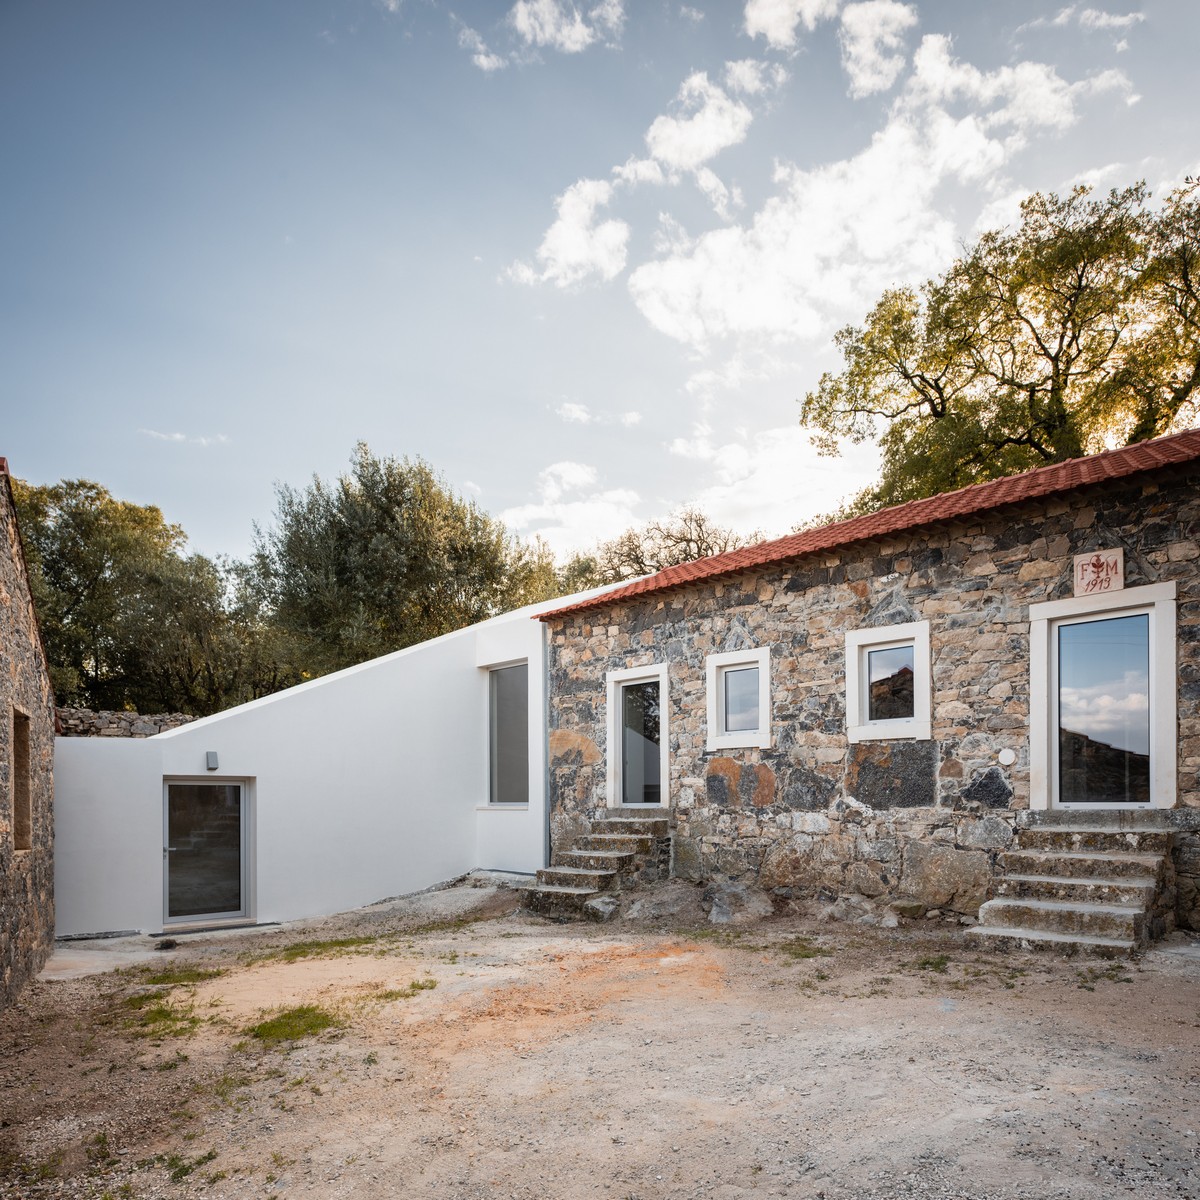 Новый старый дом в Португалии между, существующие, возможности, образуя, через, одновременно, каждой, проект, объёмы, ввести, соединительный, новый, решили, элемент, Ответ, почти, немедленное, решение, объединить, восстановить